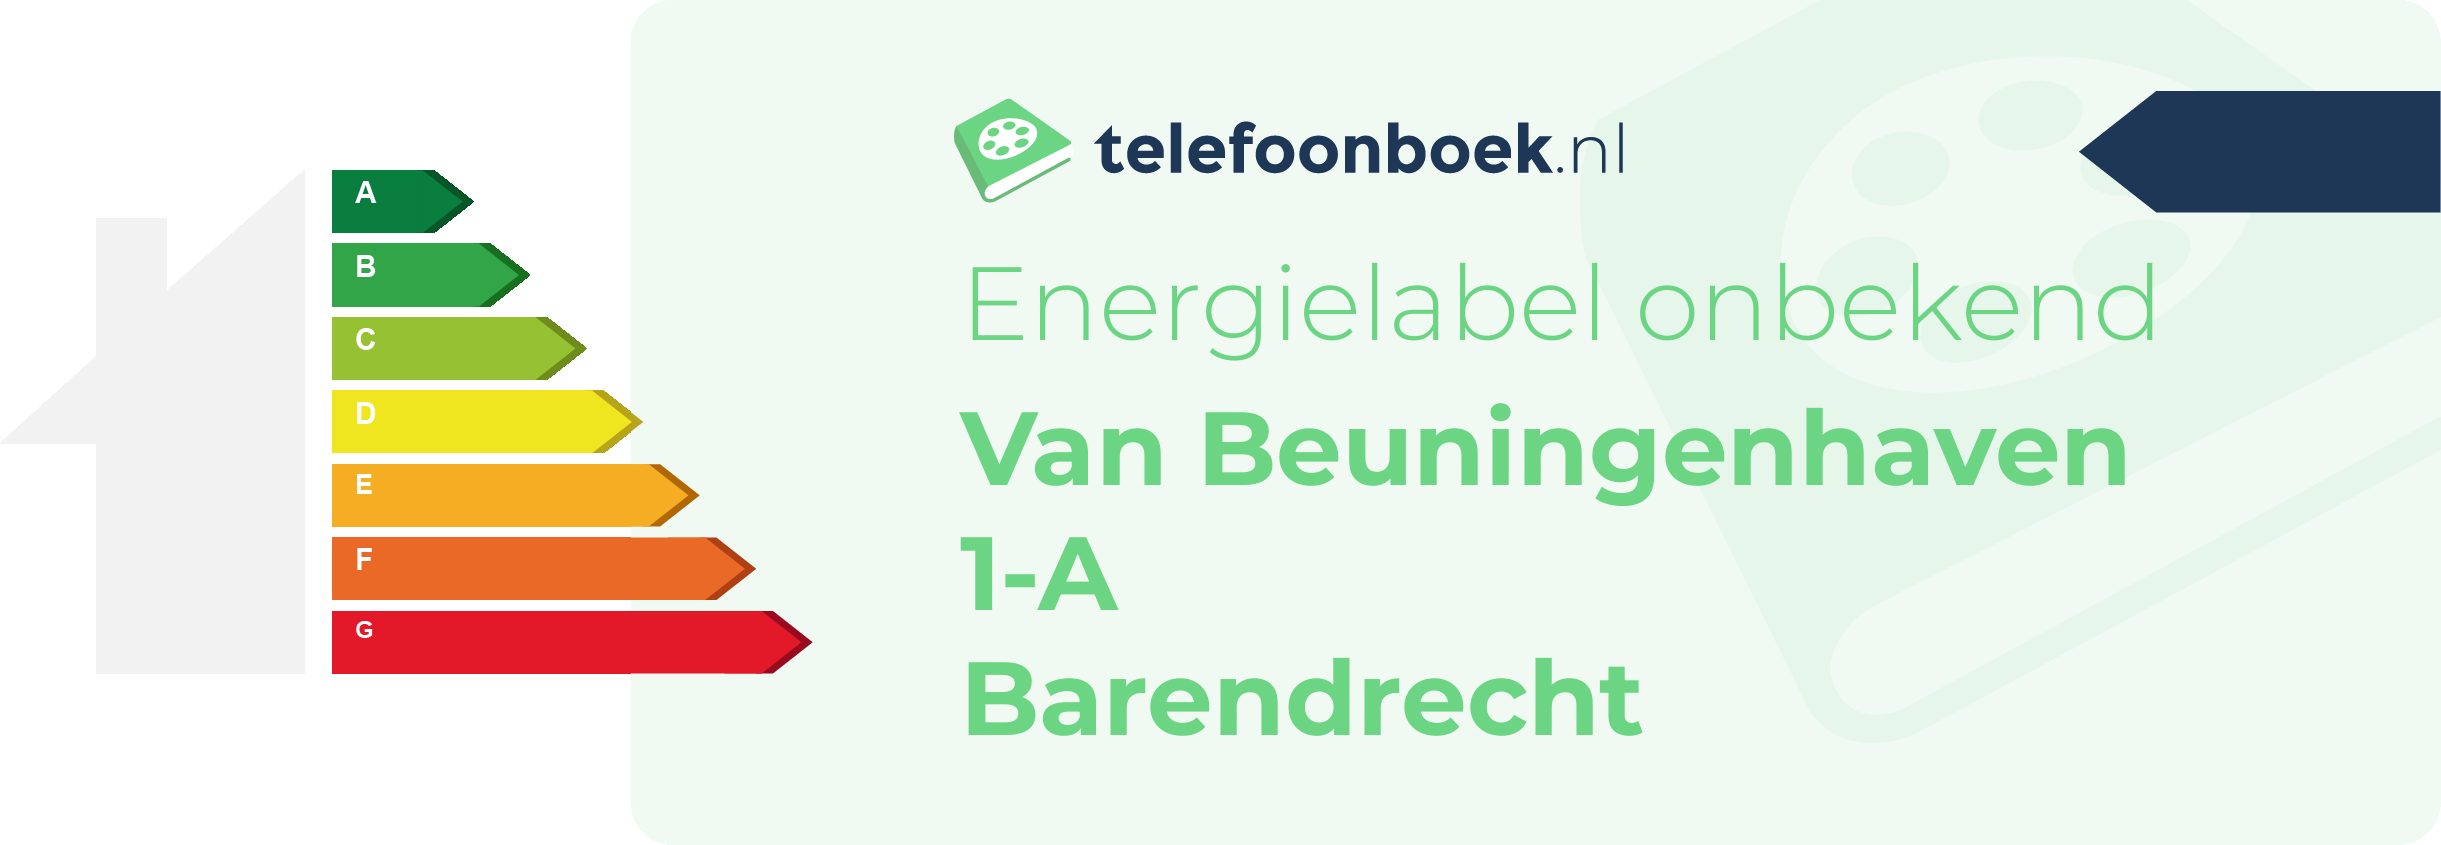 Energielabel Van Beuningenhaven 1-A Barendrecht